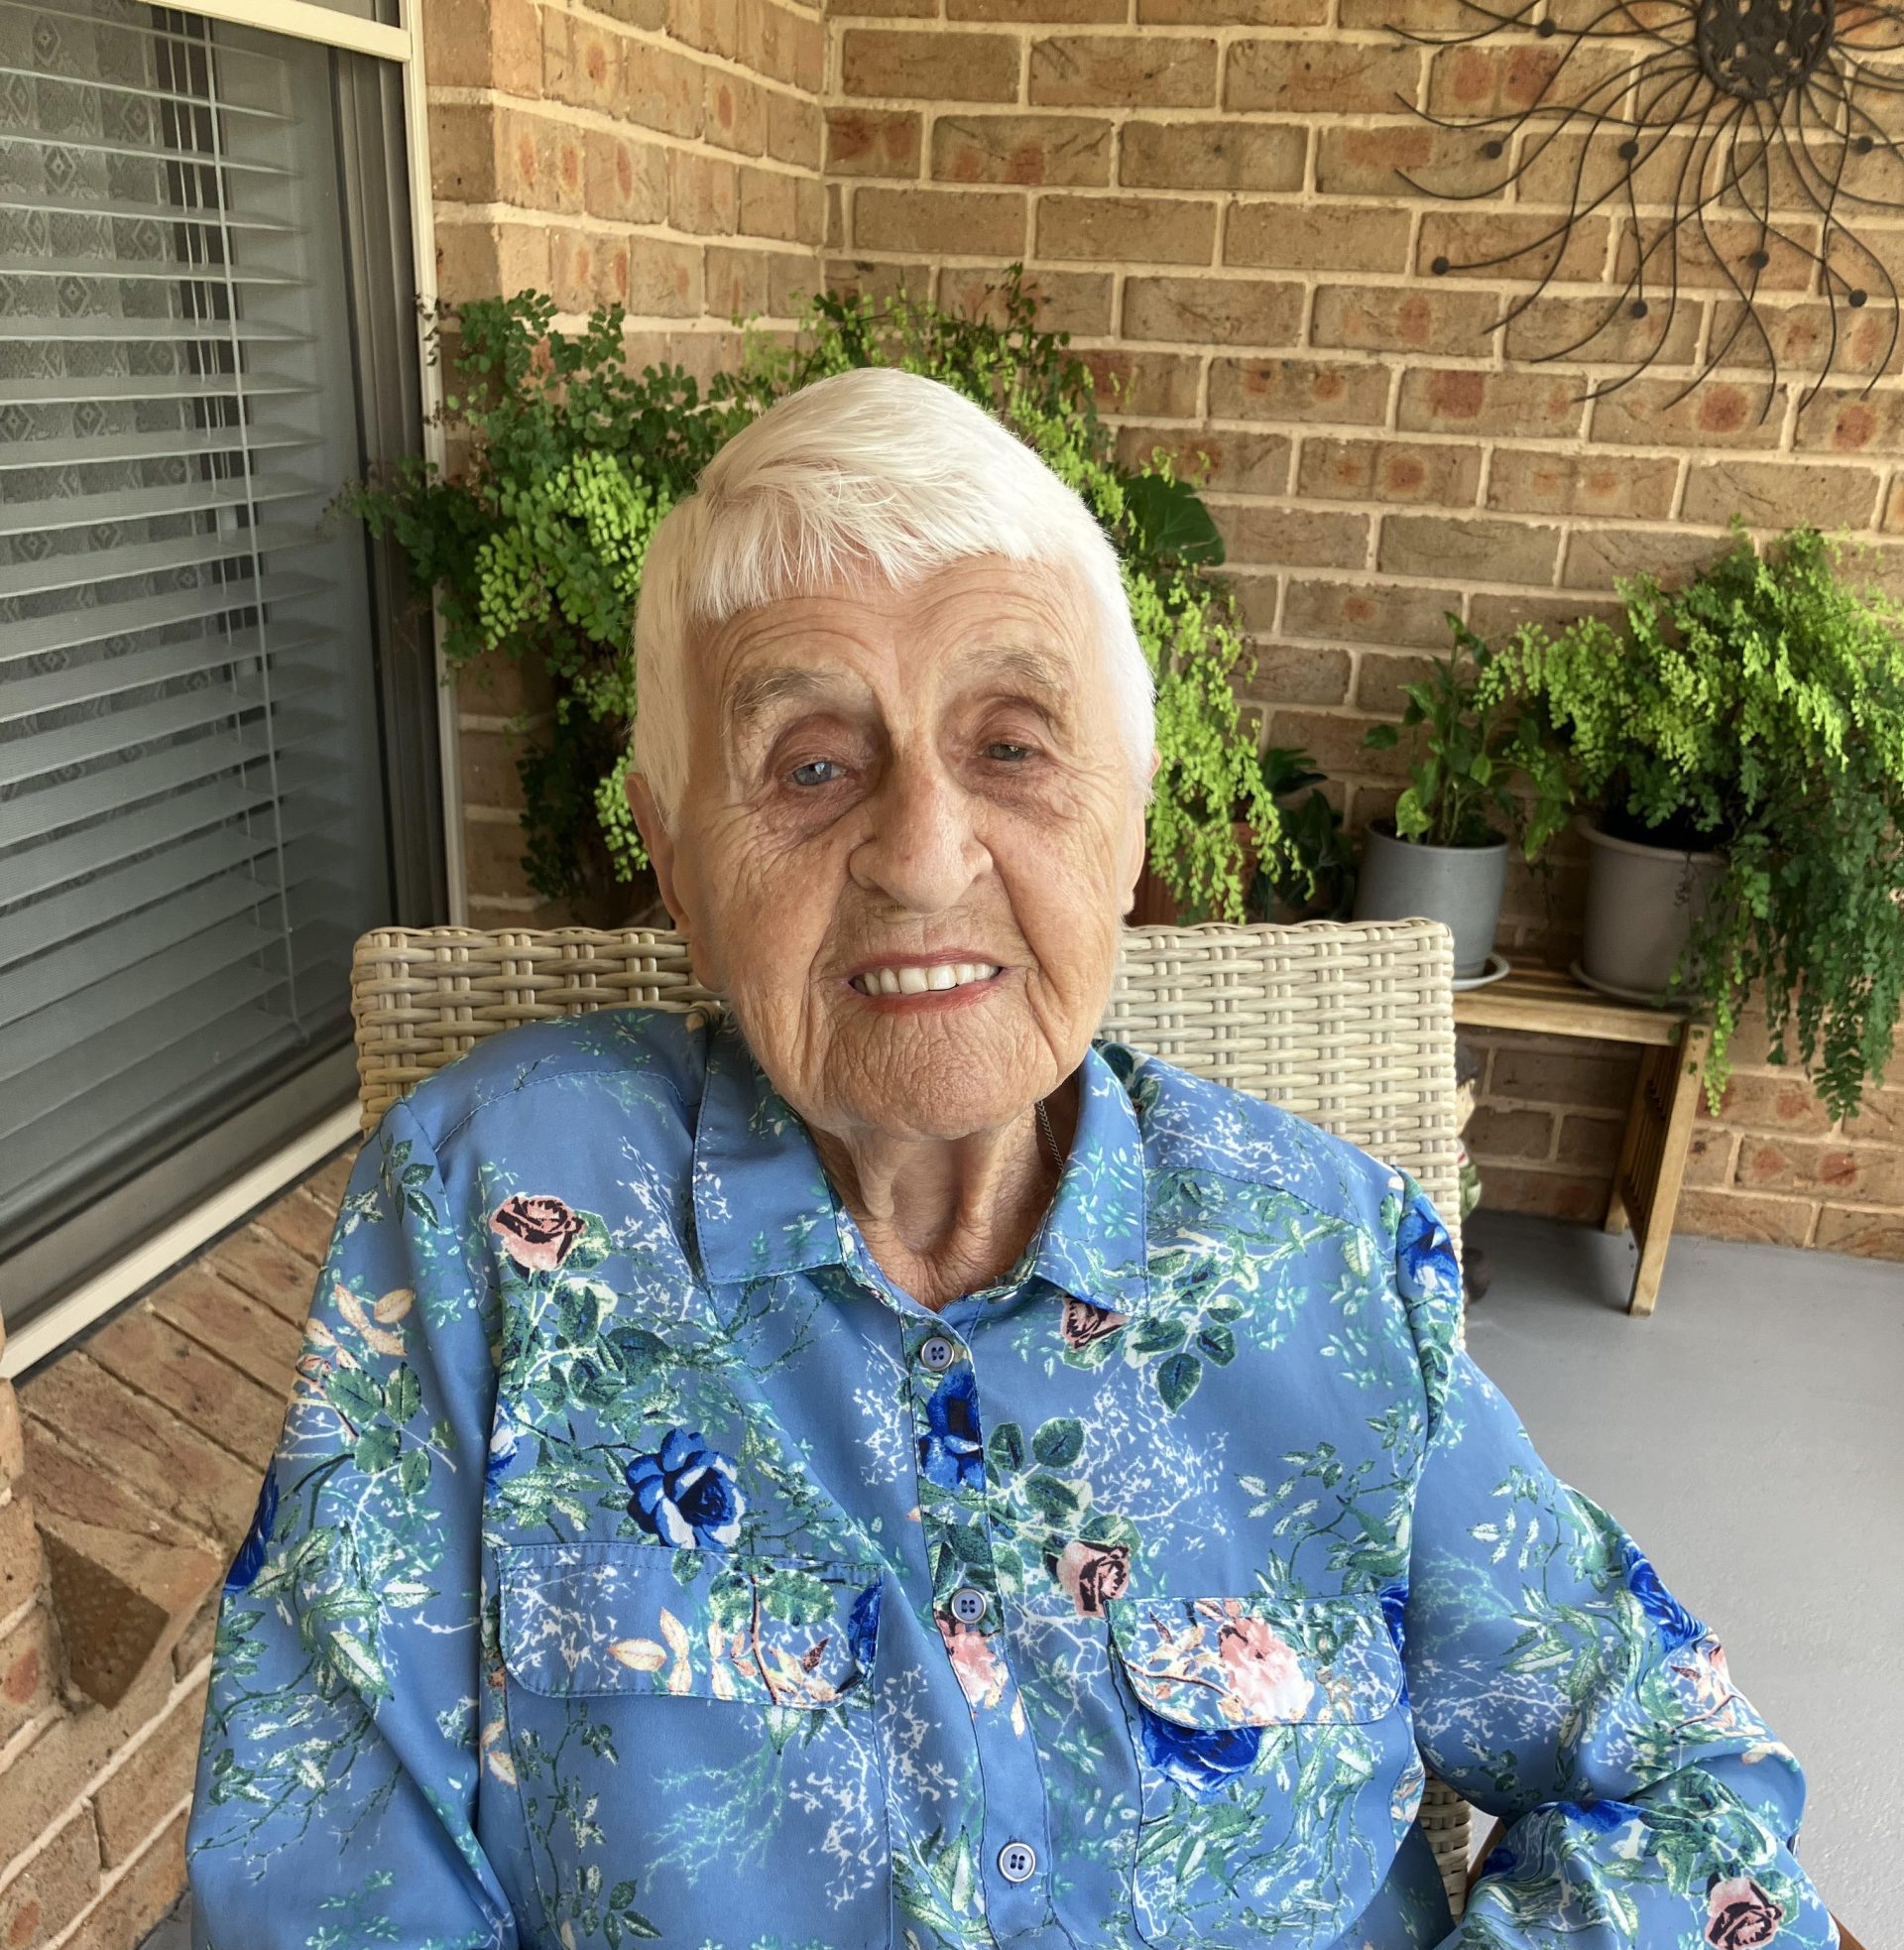 Former Gunnedah resident looks back on life and celebrates 105th birthday